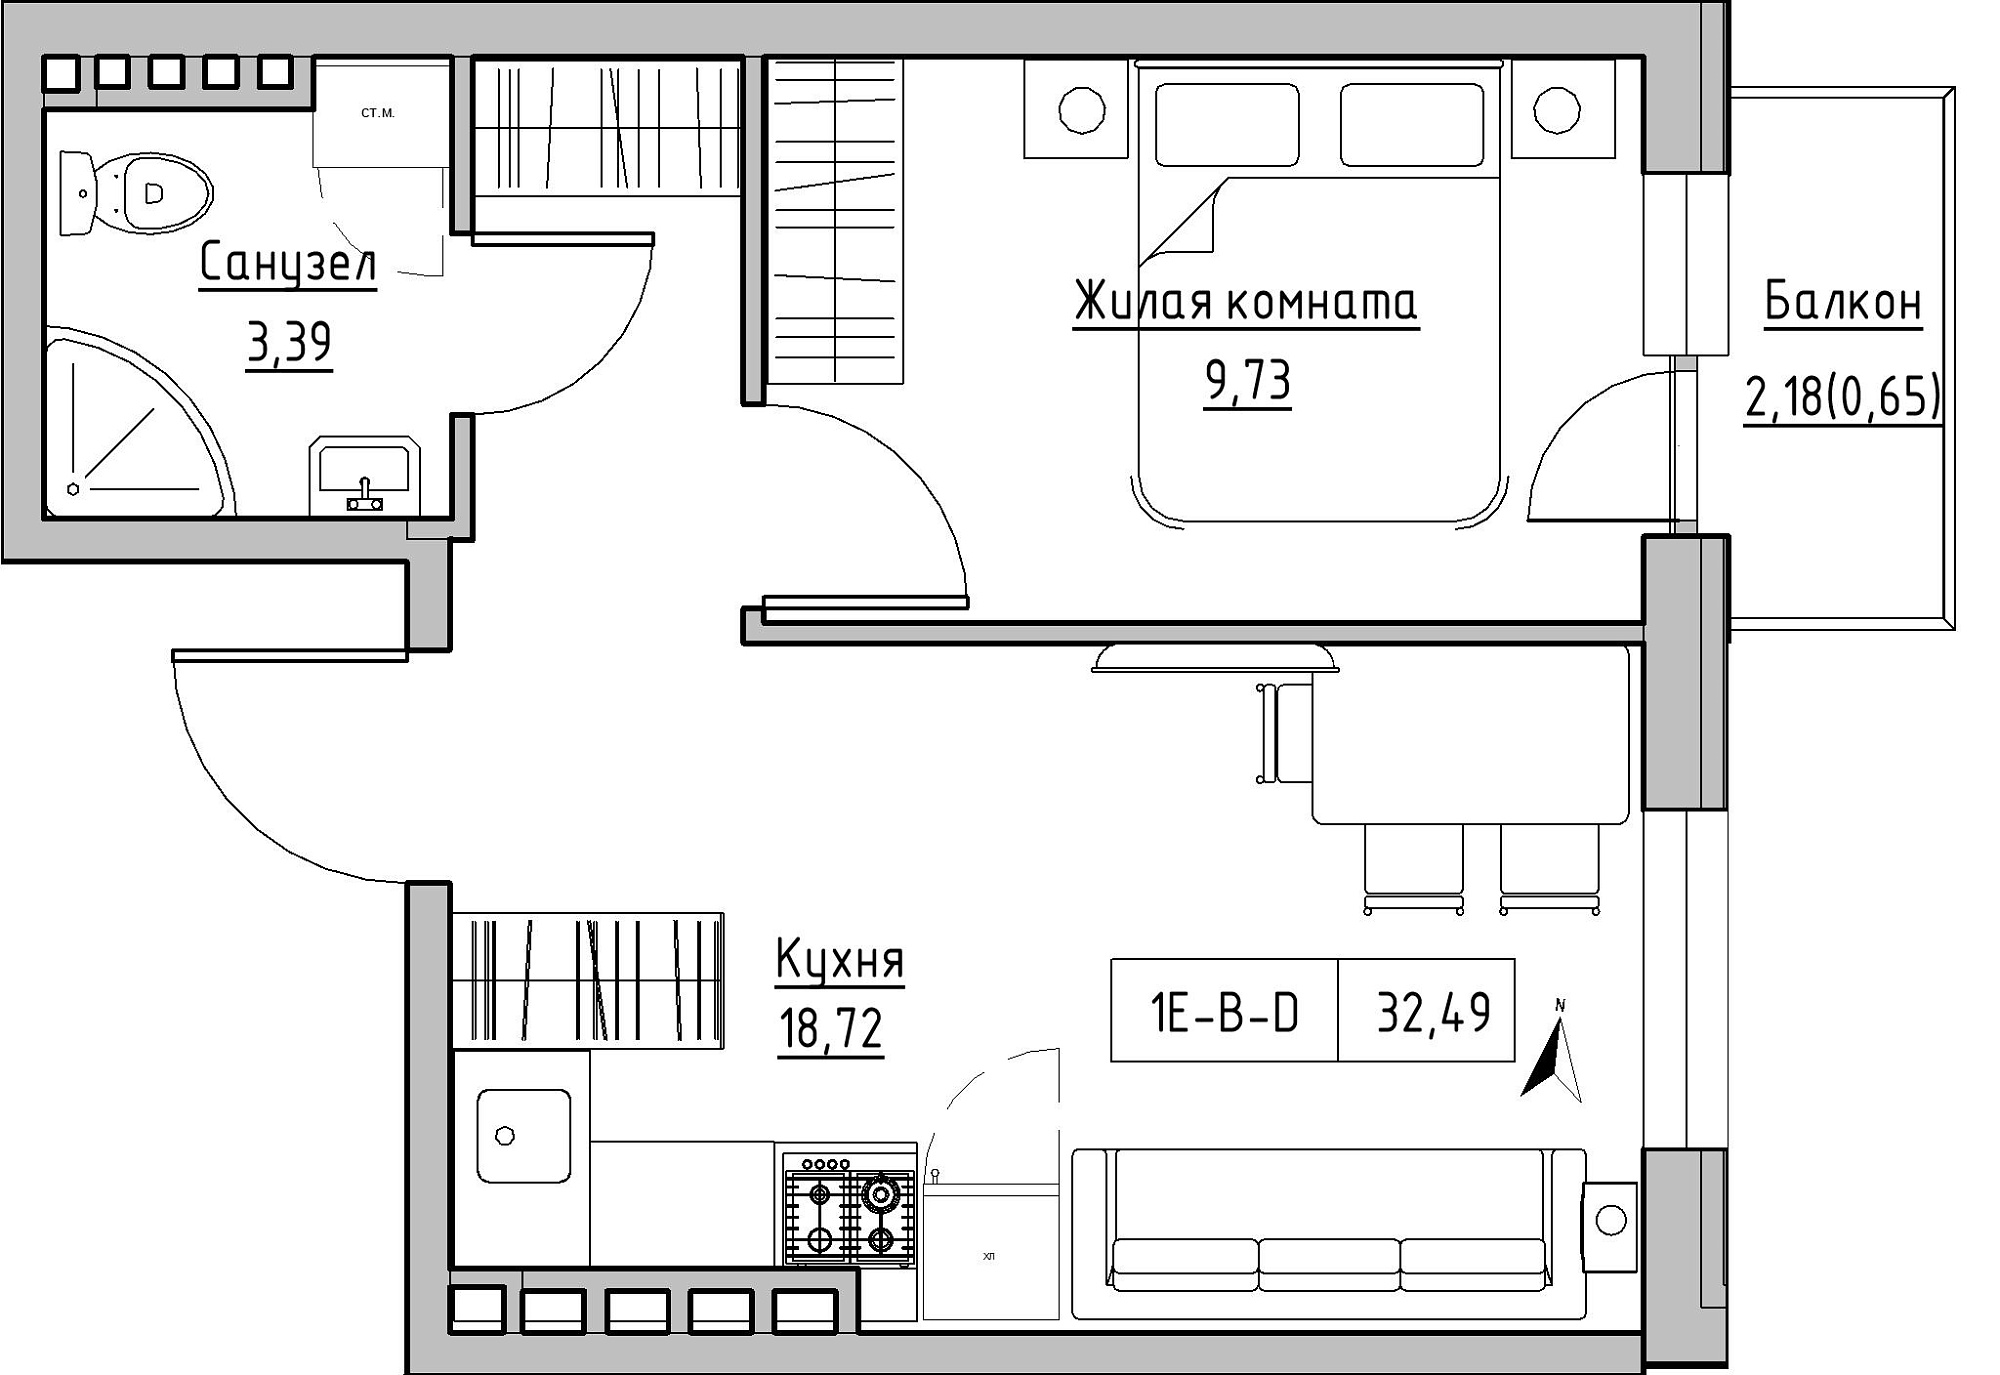 Планировка 1-к квартира площей 32.49м2, KS-024-05/0016.